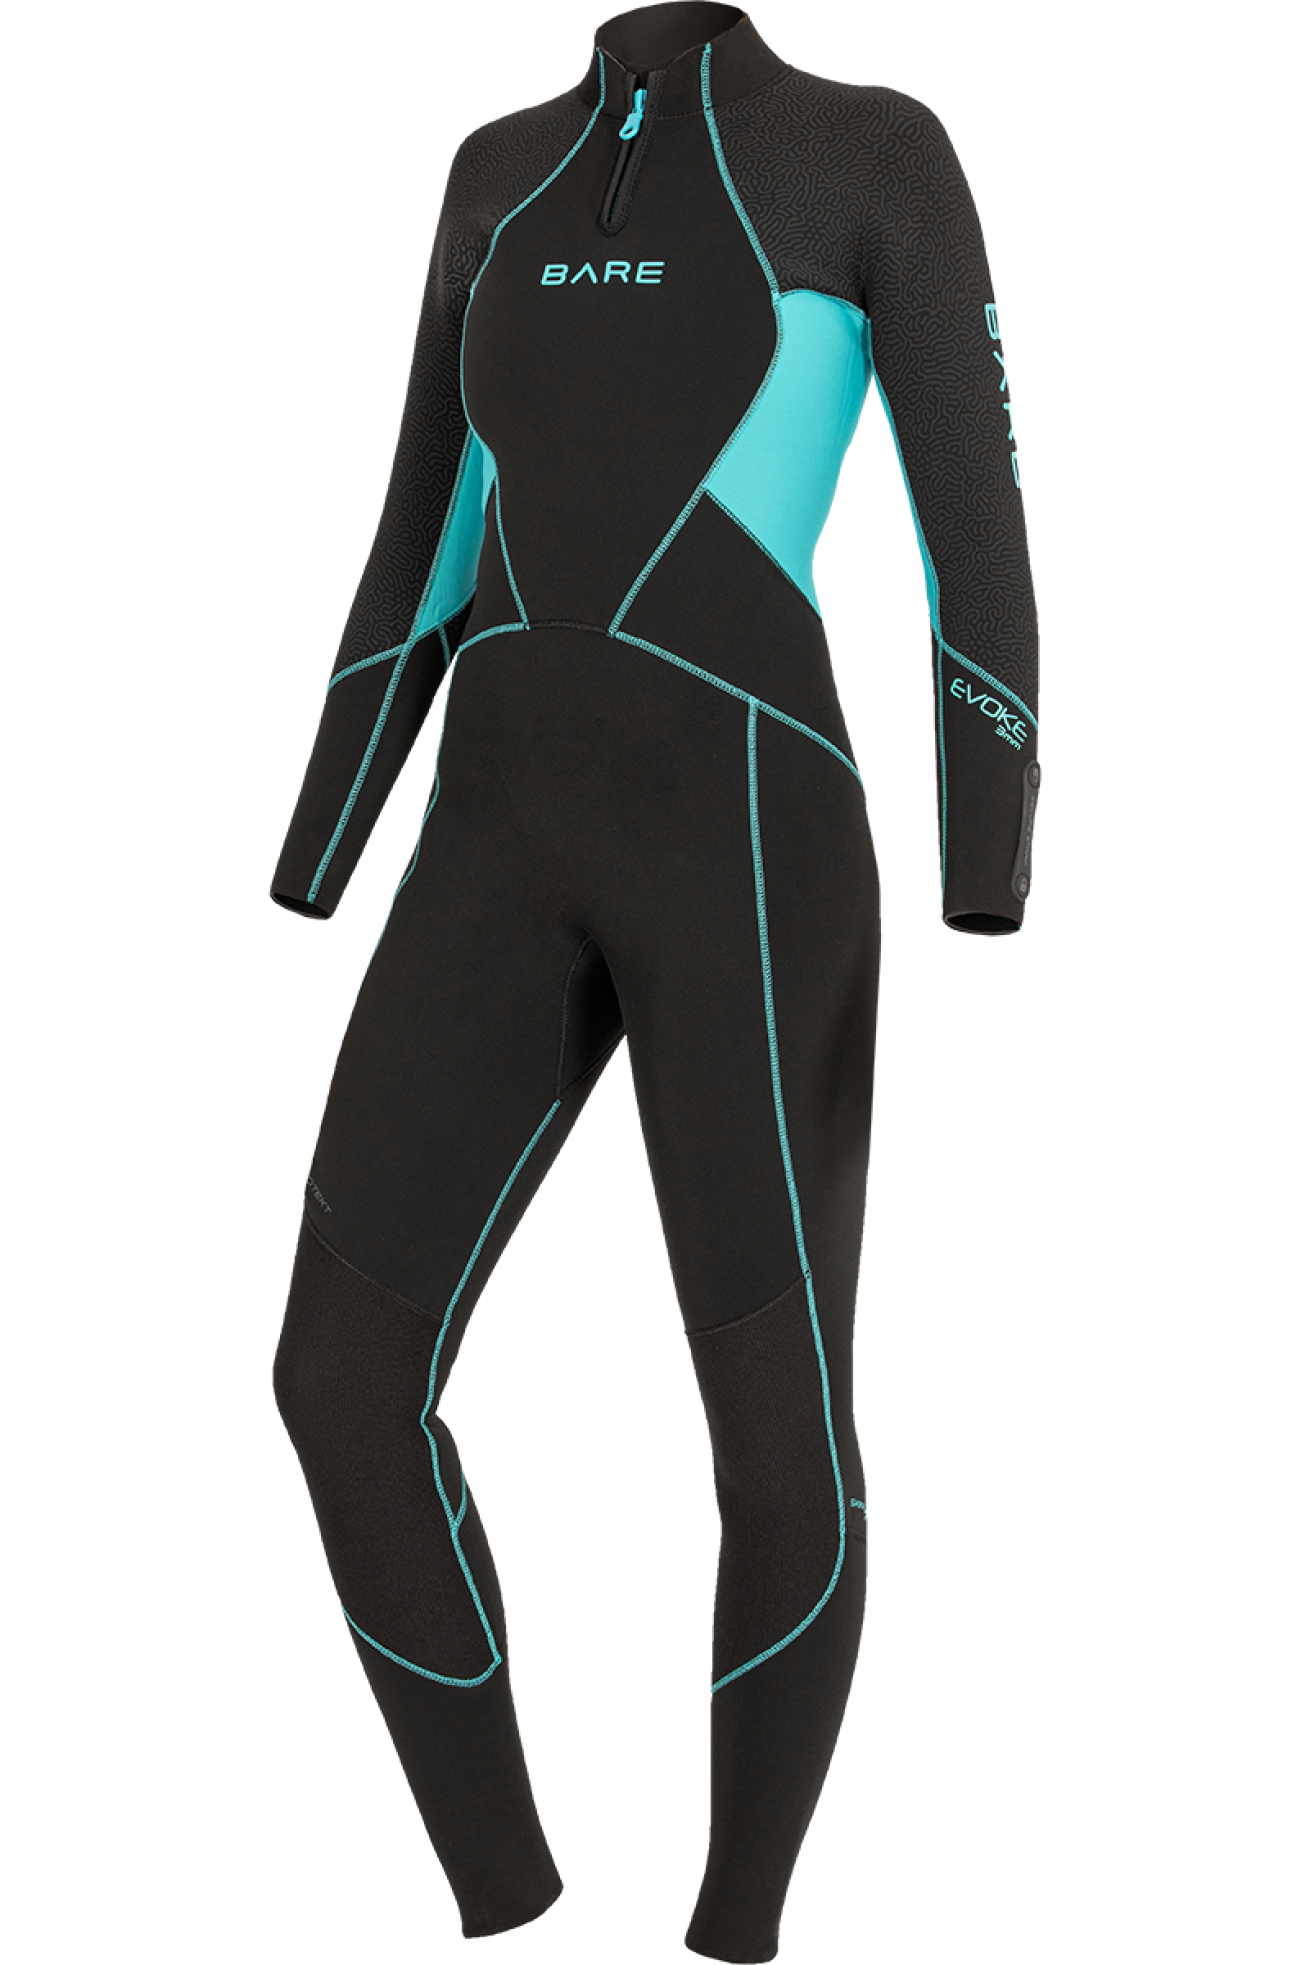 Bare new Evoke 2021 scuba wetsuit